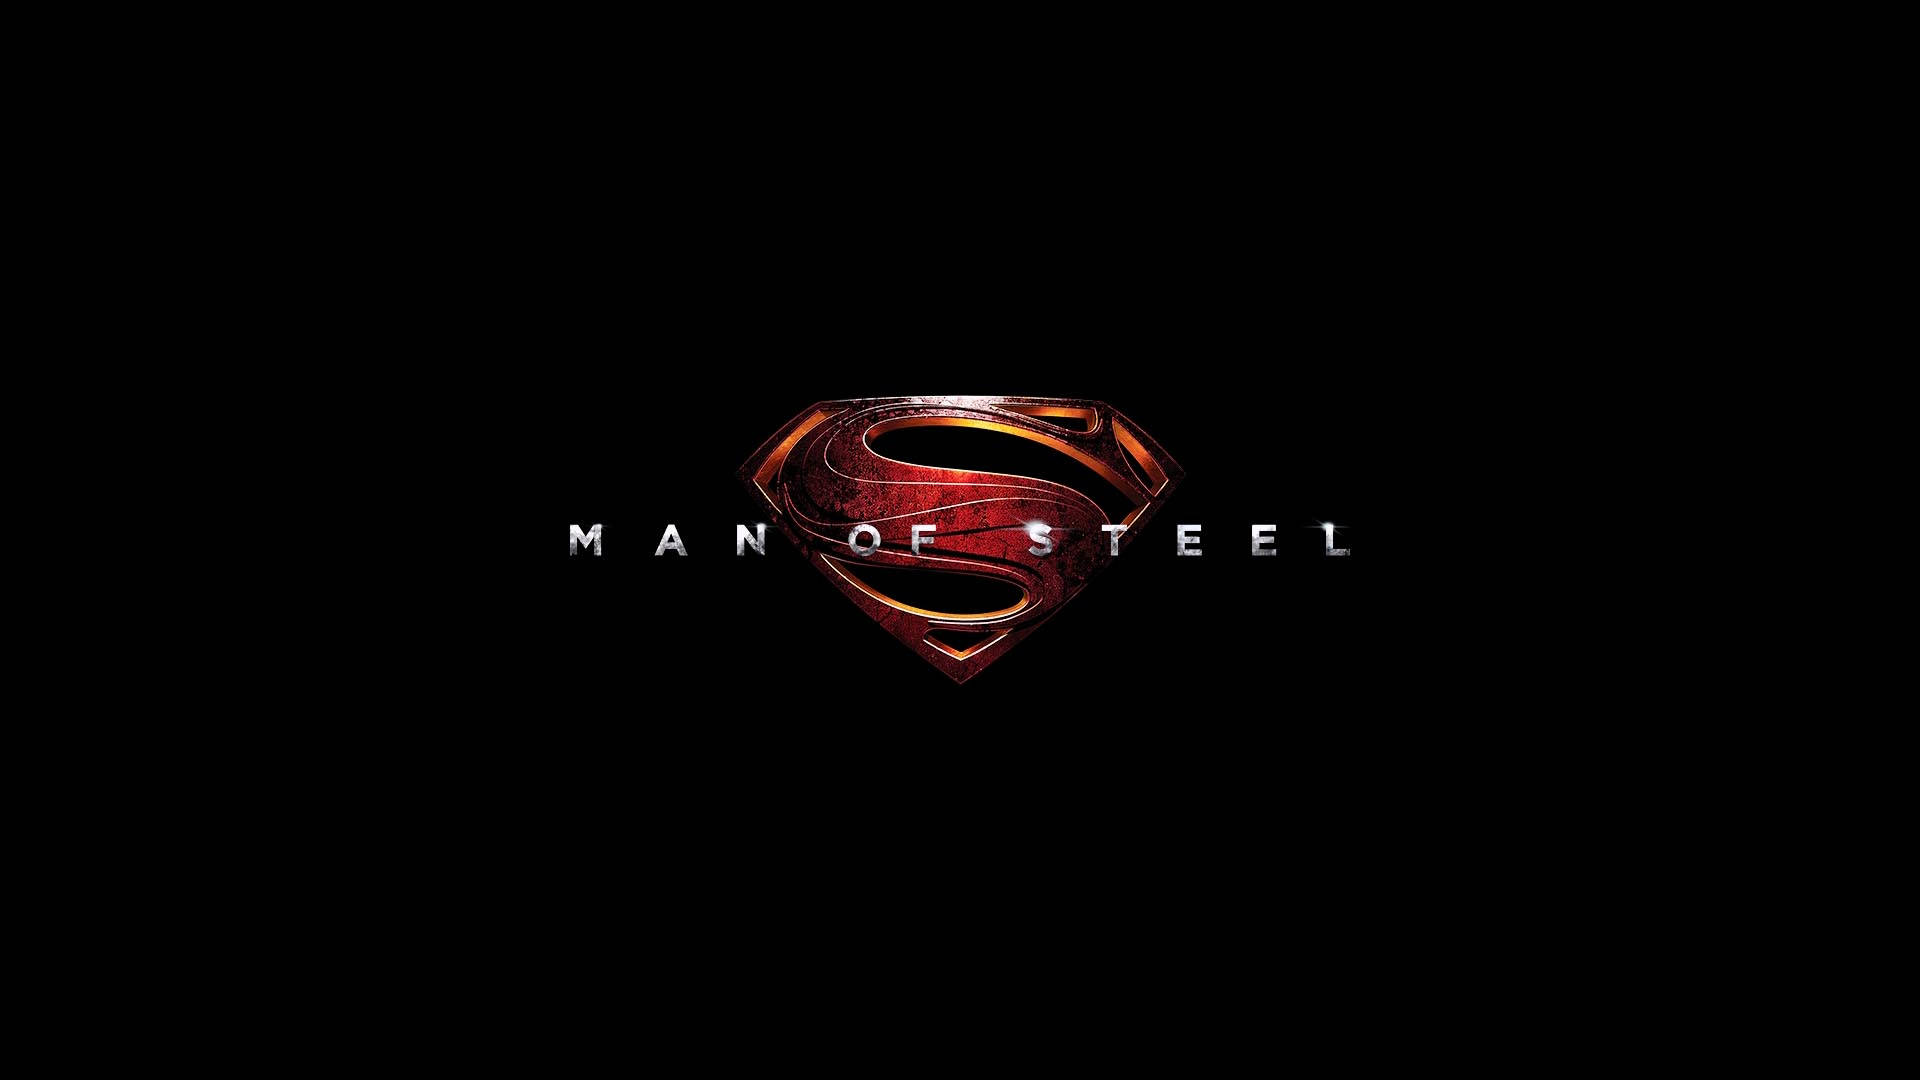 Men Of Steel på Superman Logo tapet: Se det stilfulde Superman Logo tapet med Men of Steel tema. Wallpaper